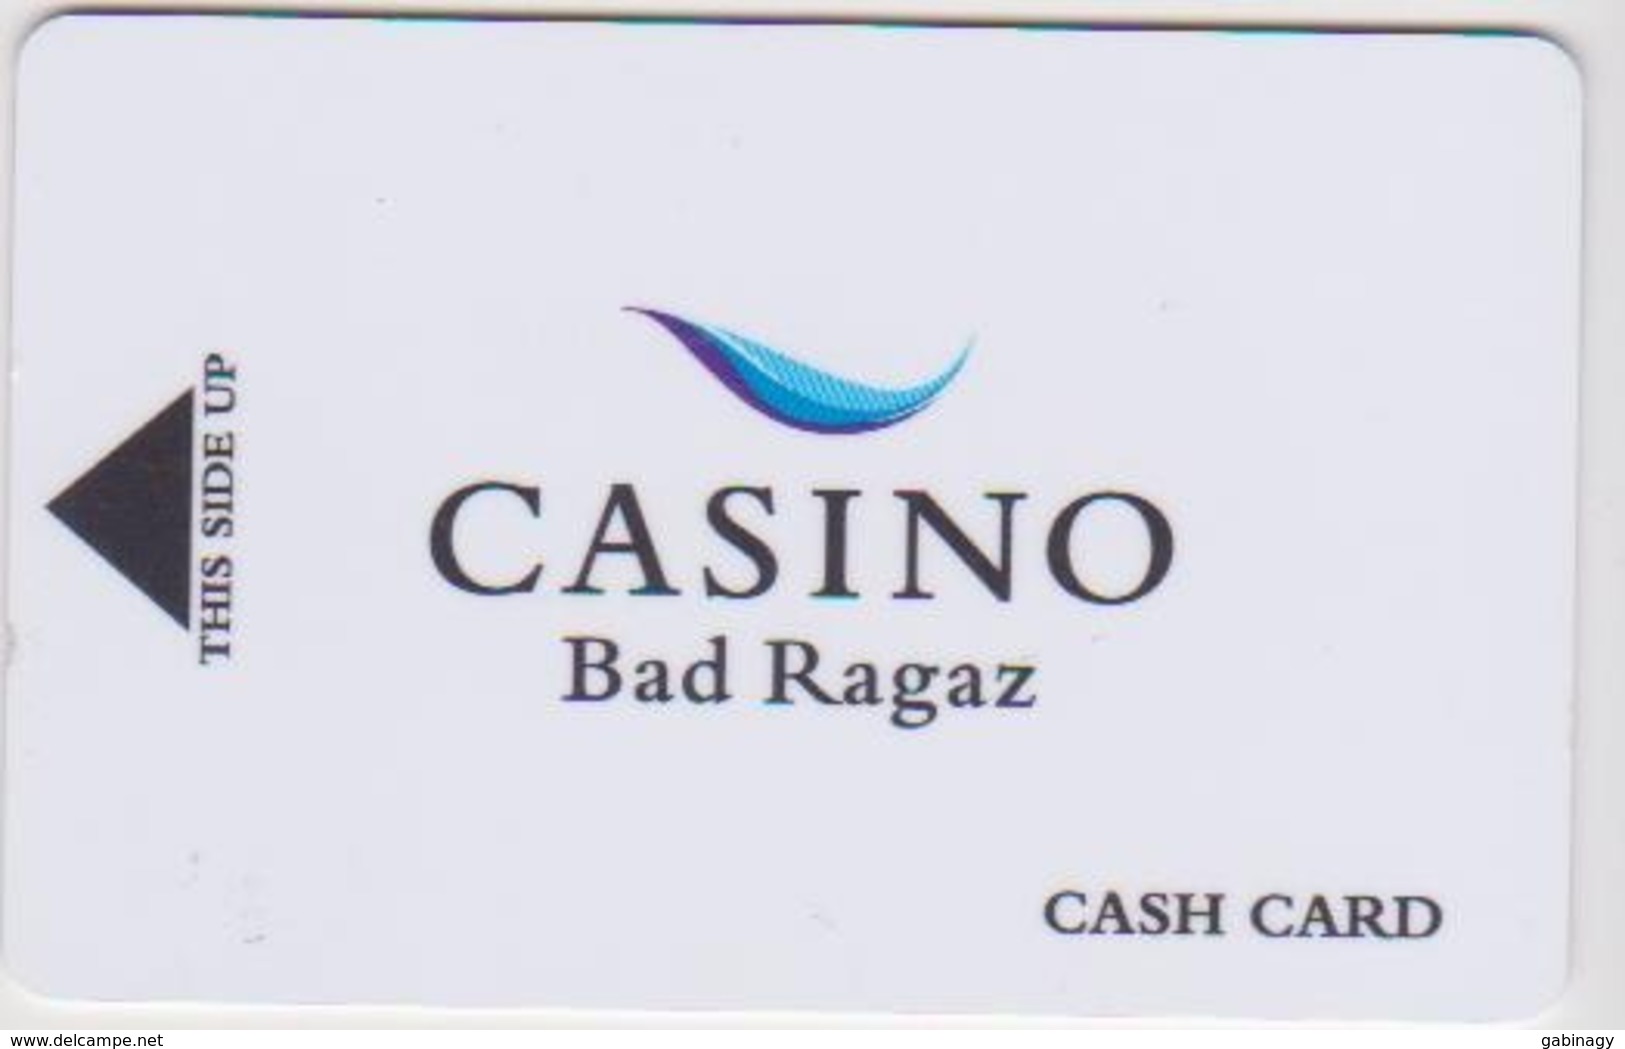 CASINO CARD - 429 - Switzerland - Casino Bad Ragaz - Casinokarten